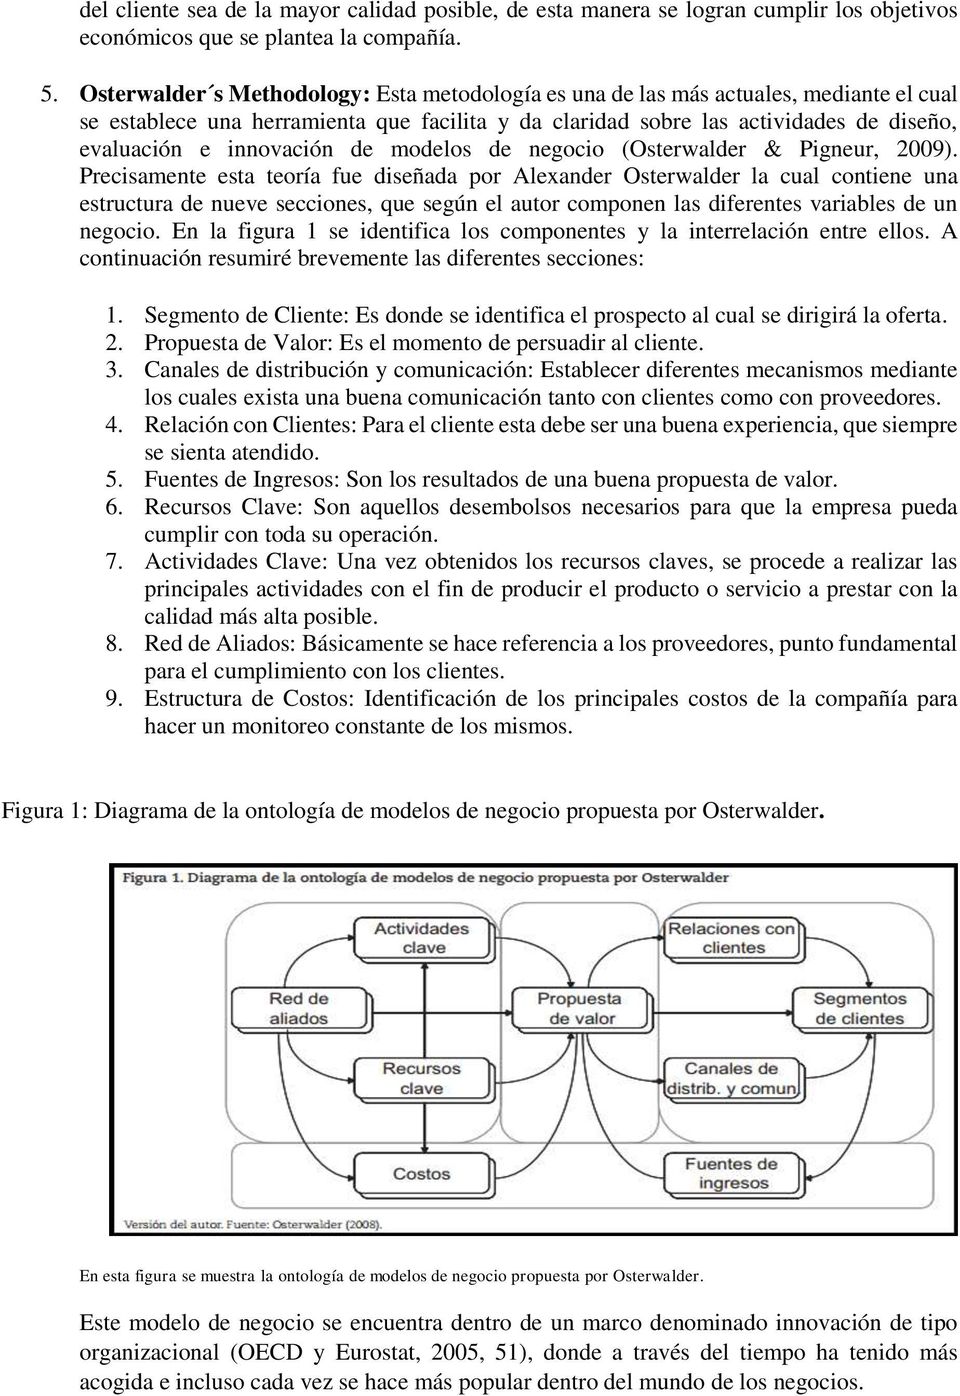 innovación de modelos de negocio (Osterwalder & Pigneur, 2009).